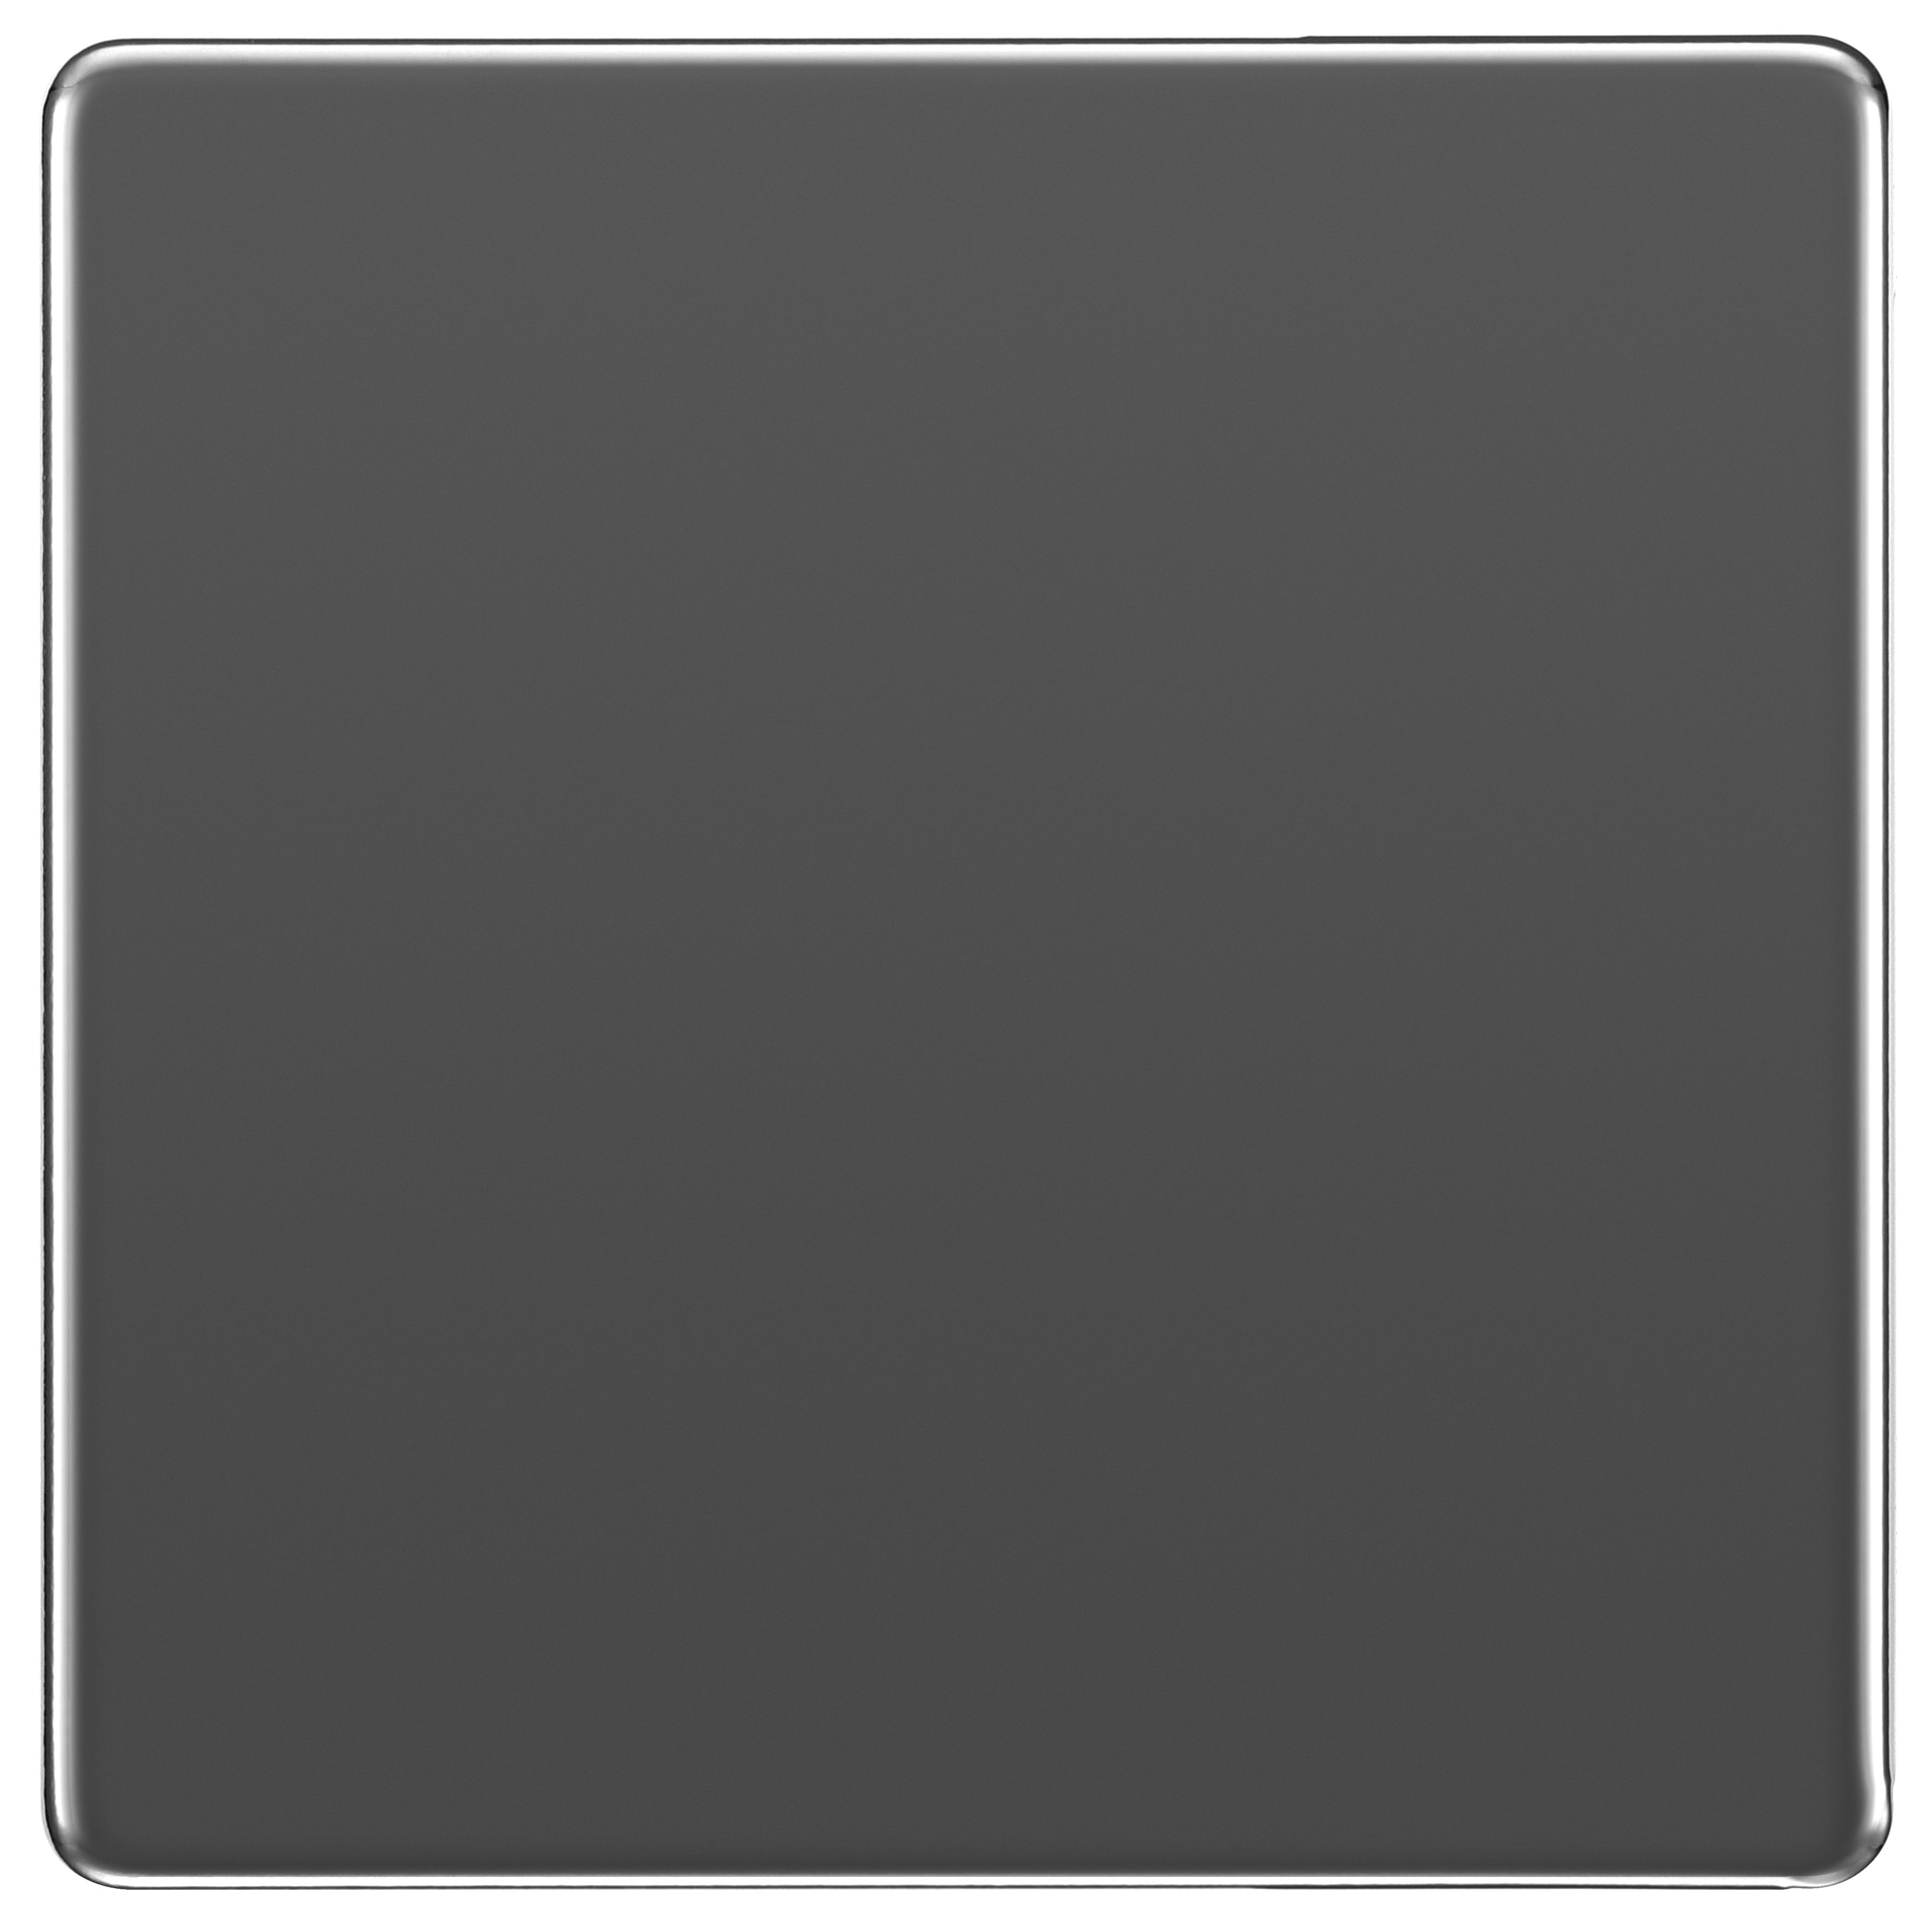 BG Screwless Flat Plate 1 Gang Blank Plate - Black Nickel